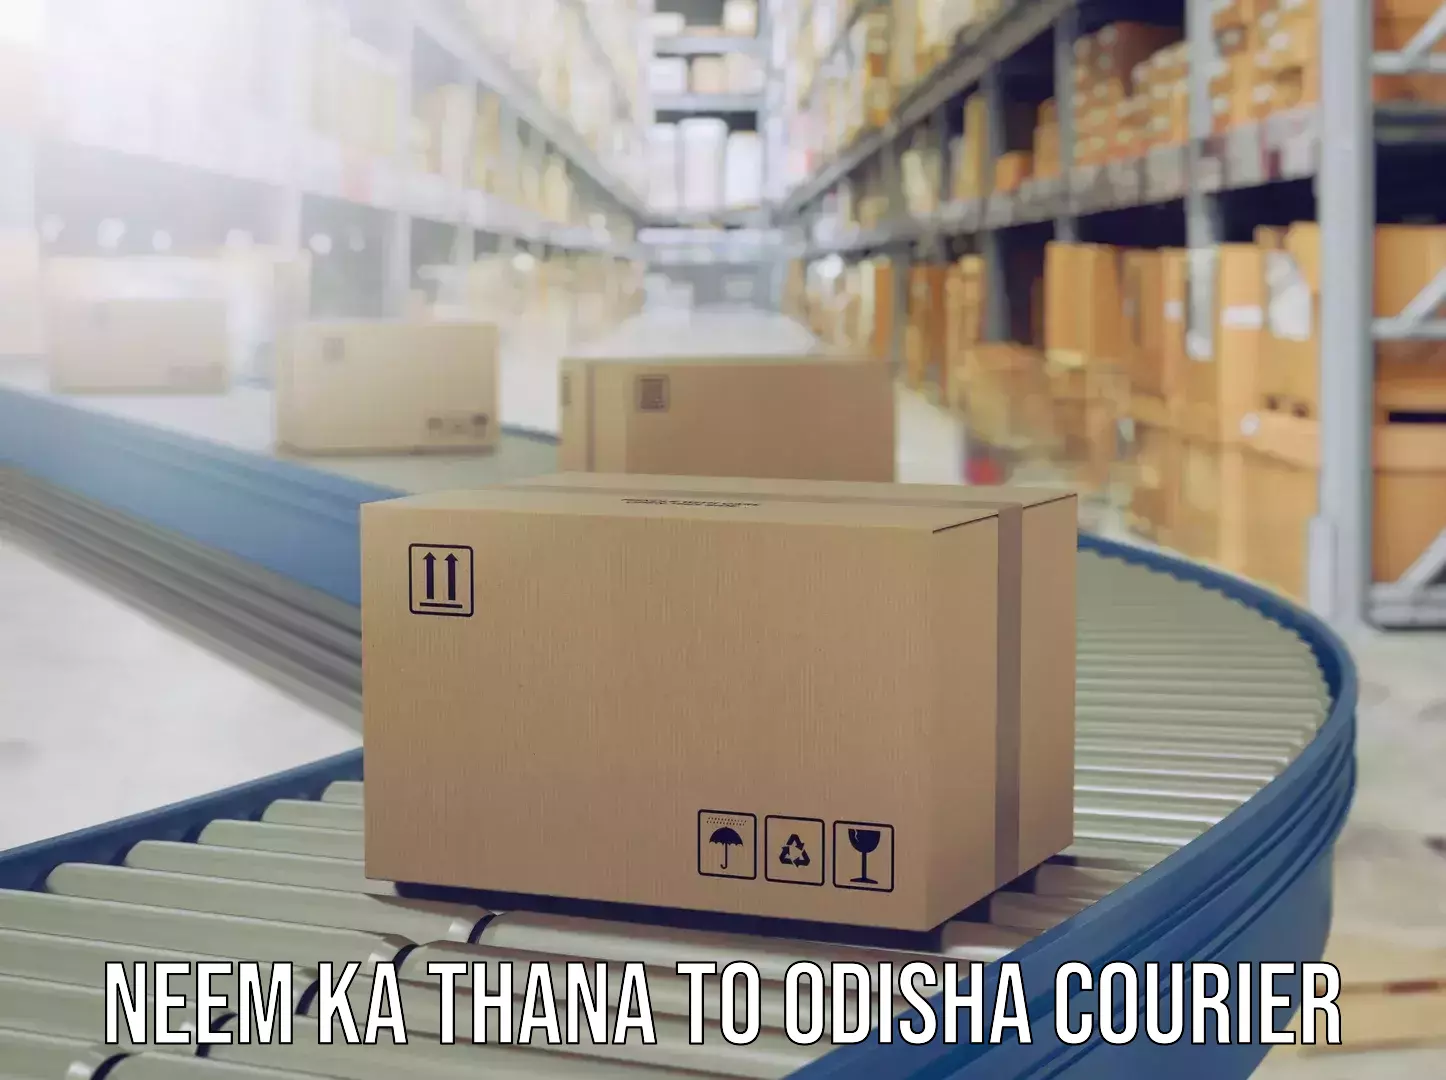 Luggage transport company Neem ka Thana to Odisha